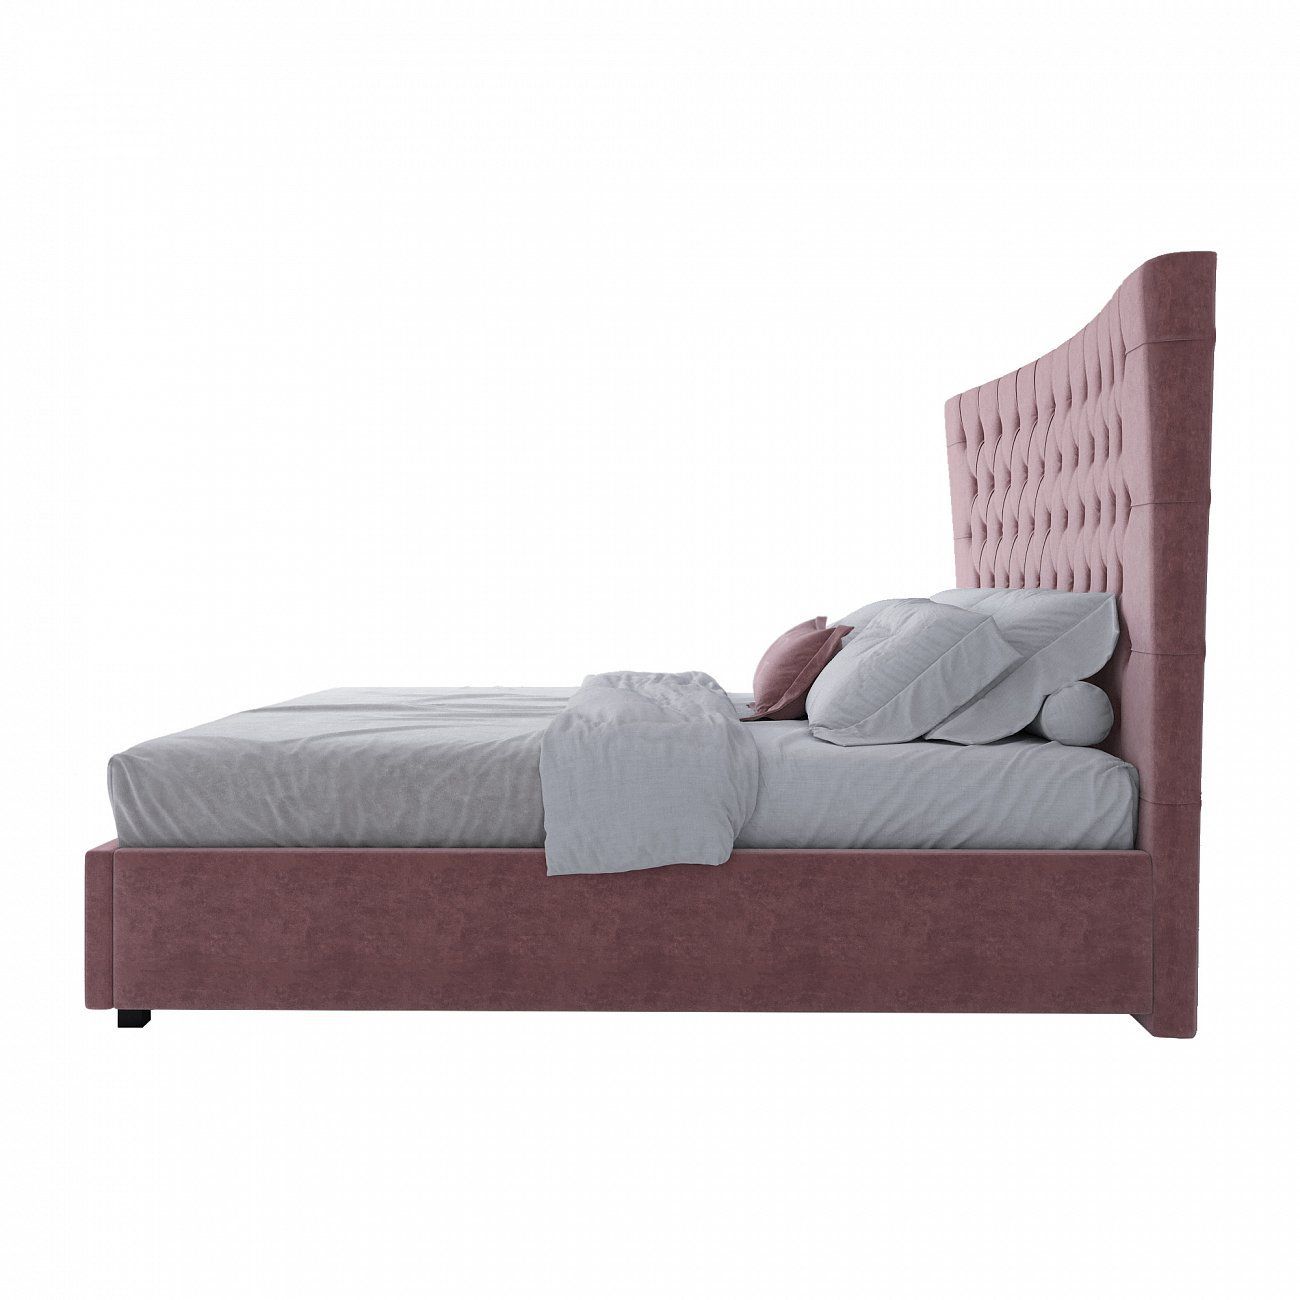 Кровать двуспальная с мягким изголовьем 180х200 см пыльная роза QuickSand